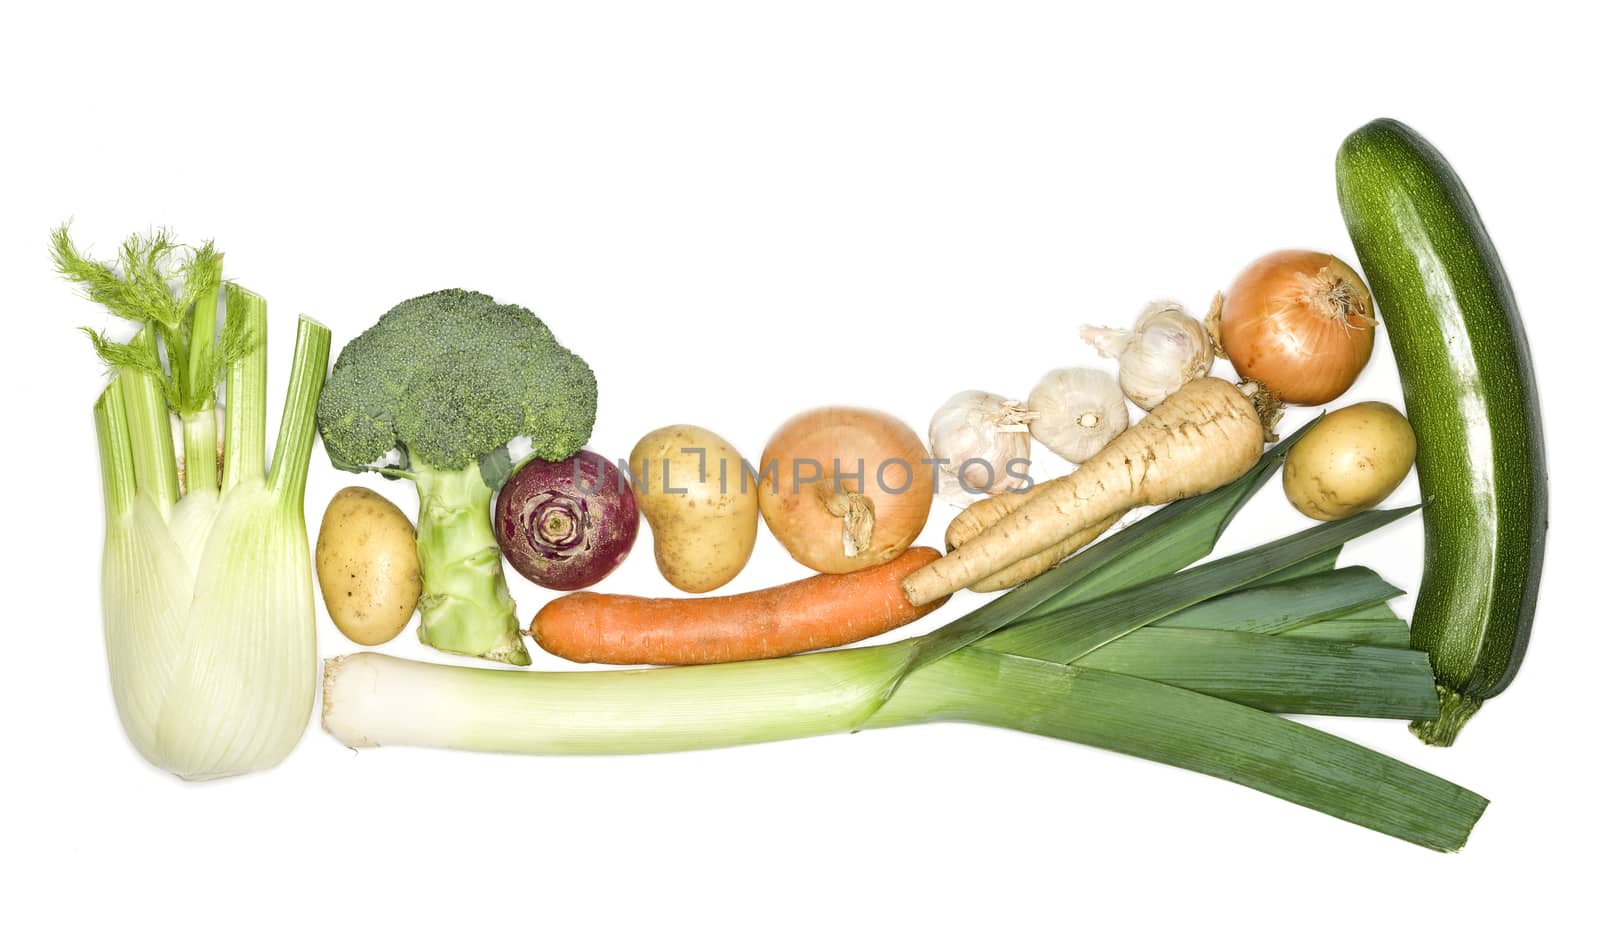 Vegetables by gemenacom